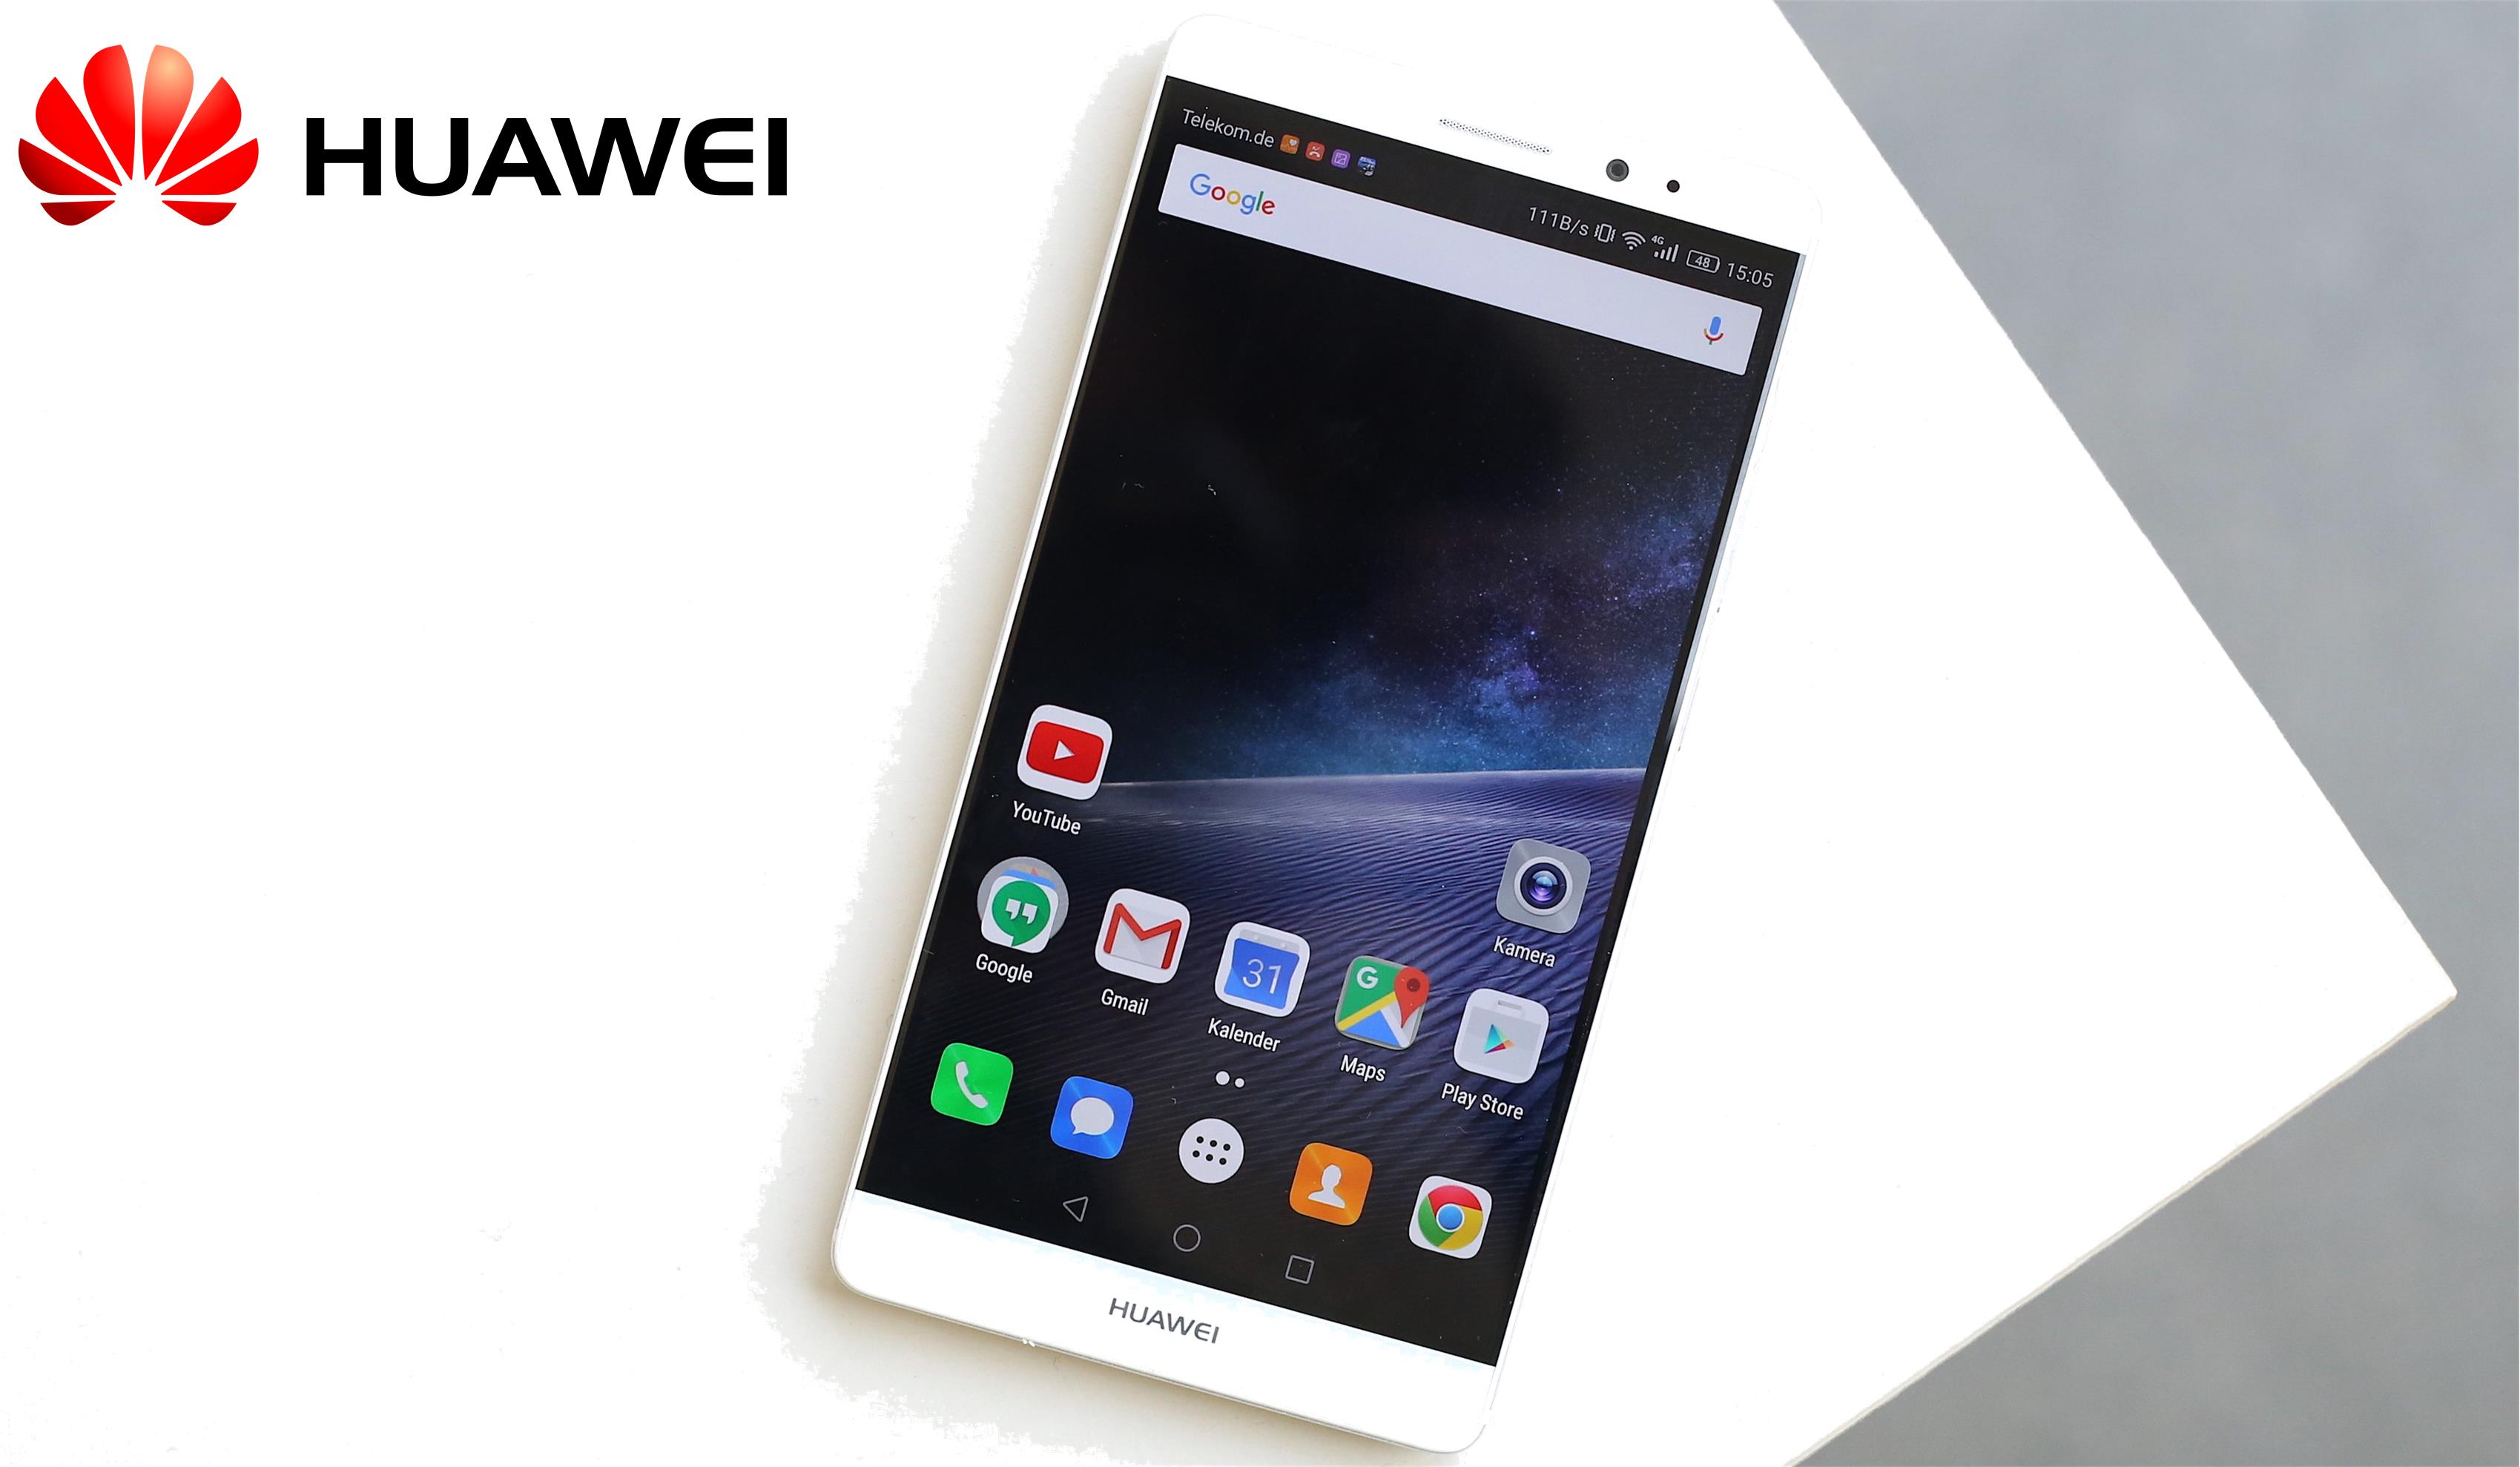 Huawei envia convites para o próximo lançamento de smartphones em 1 de setembro